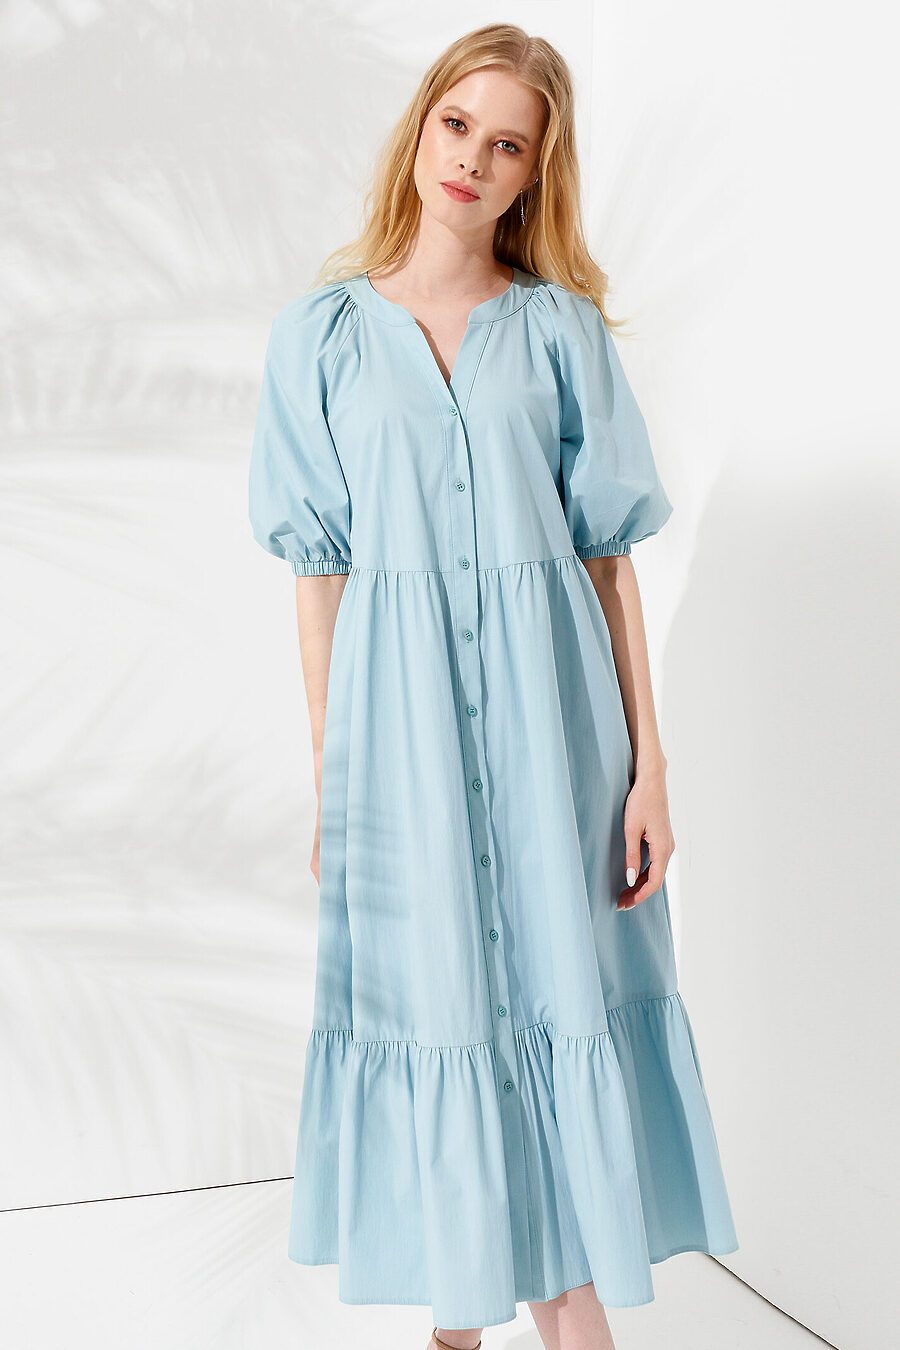 Платье для женщин PANDA 775124 купить оптом от производителя. Совместная покупка женской одежды в OptMoyo